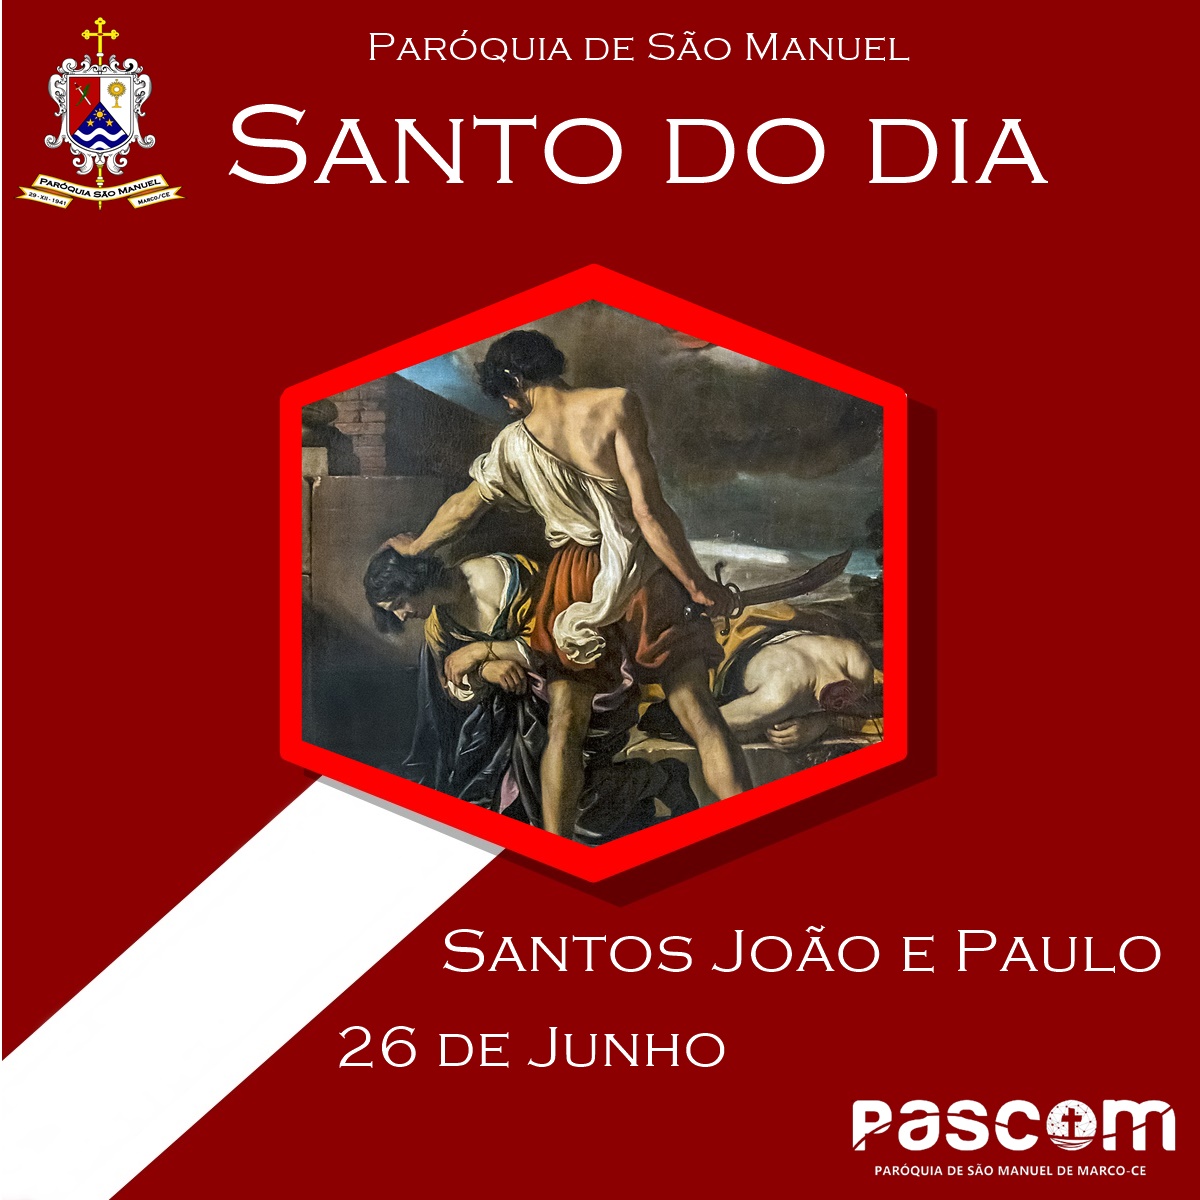 Santos João e Paulo. Créditos: Paróquia de São Manuel